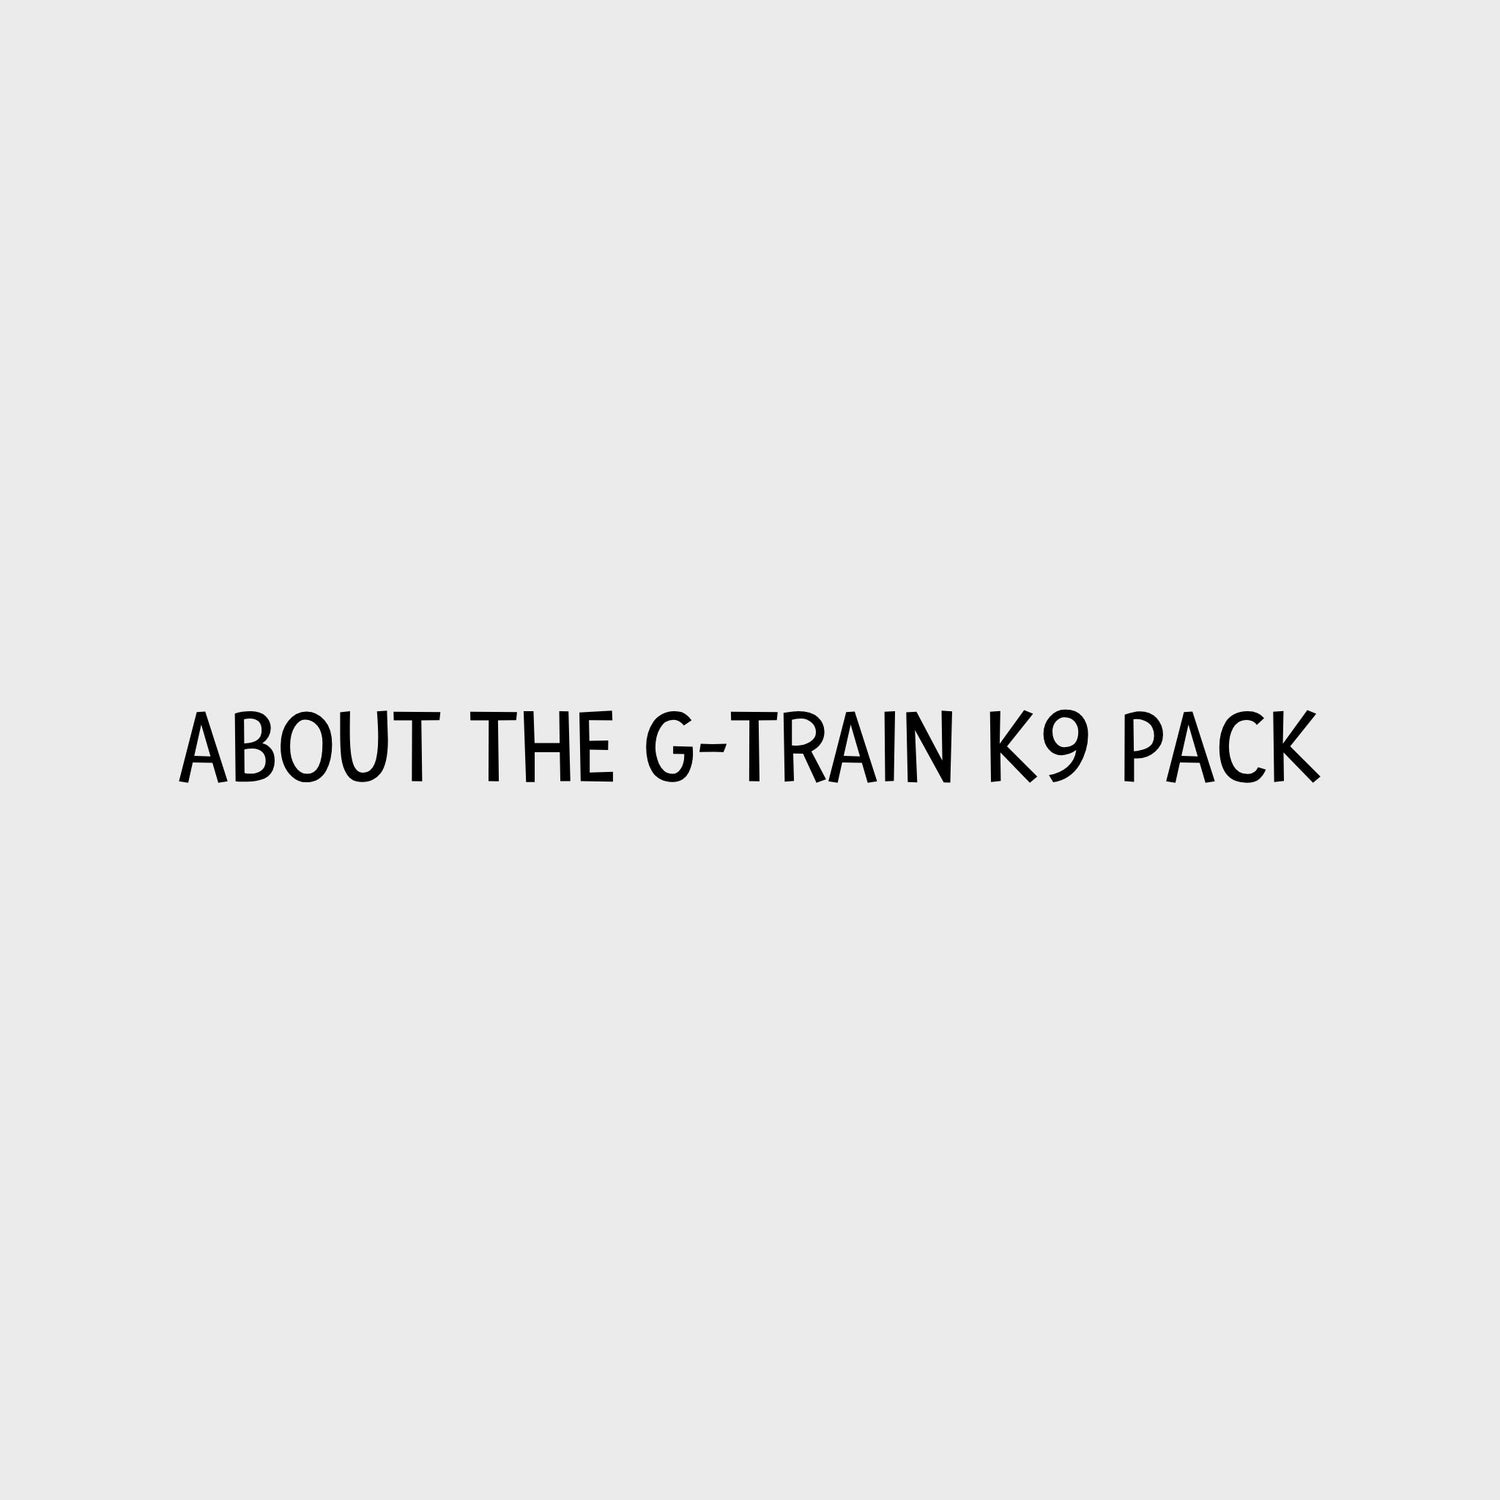 Video - Kurgo G-Train K9 Pack